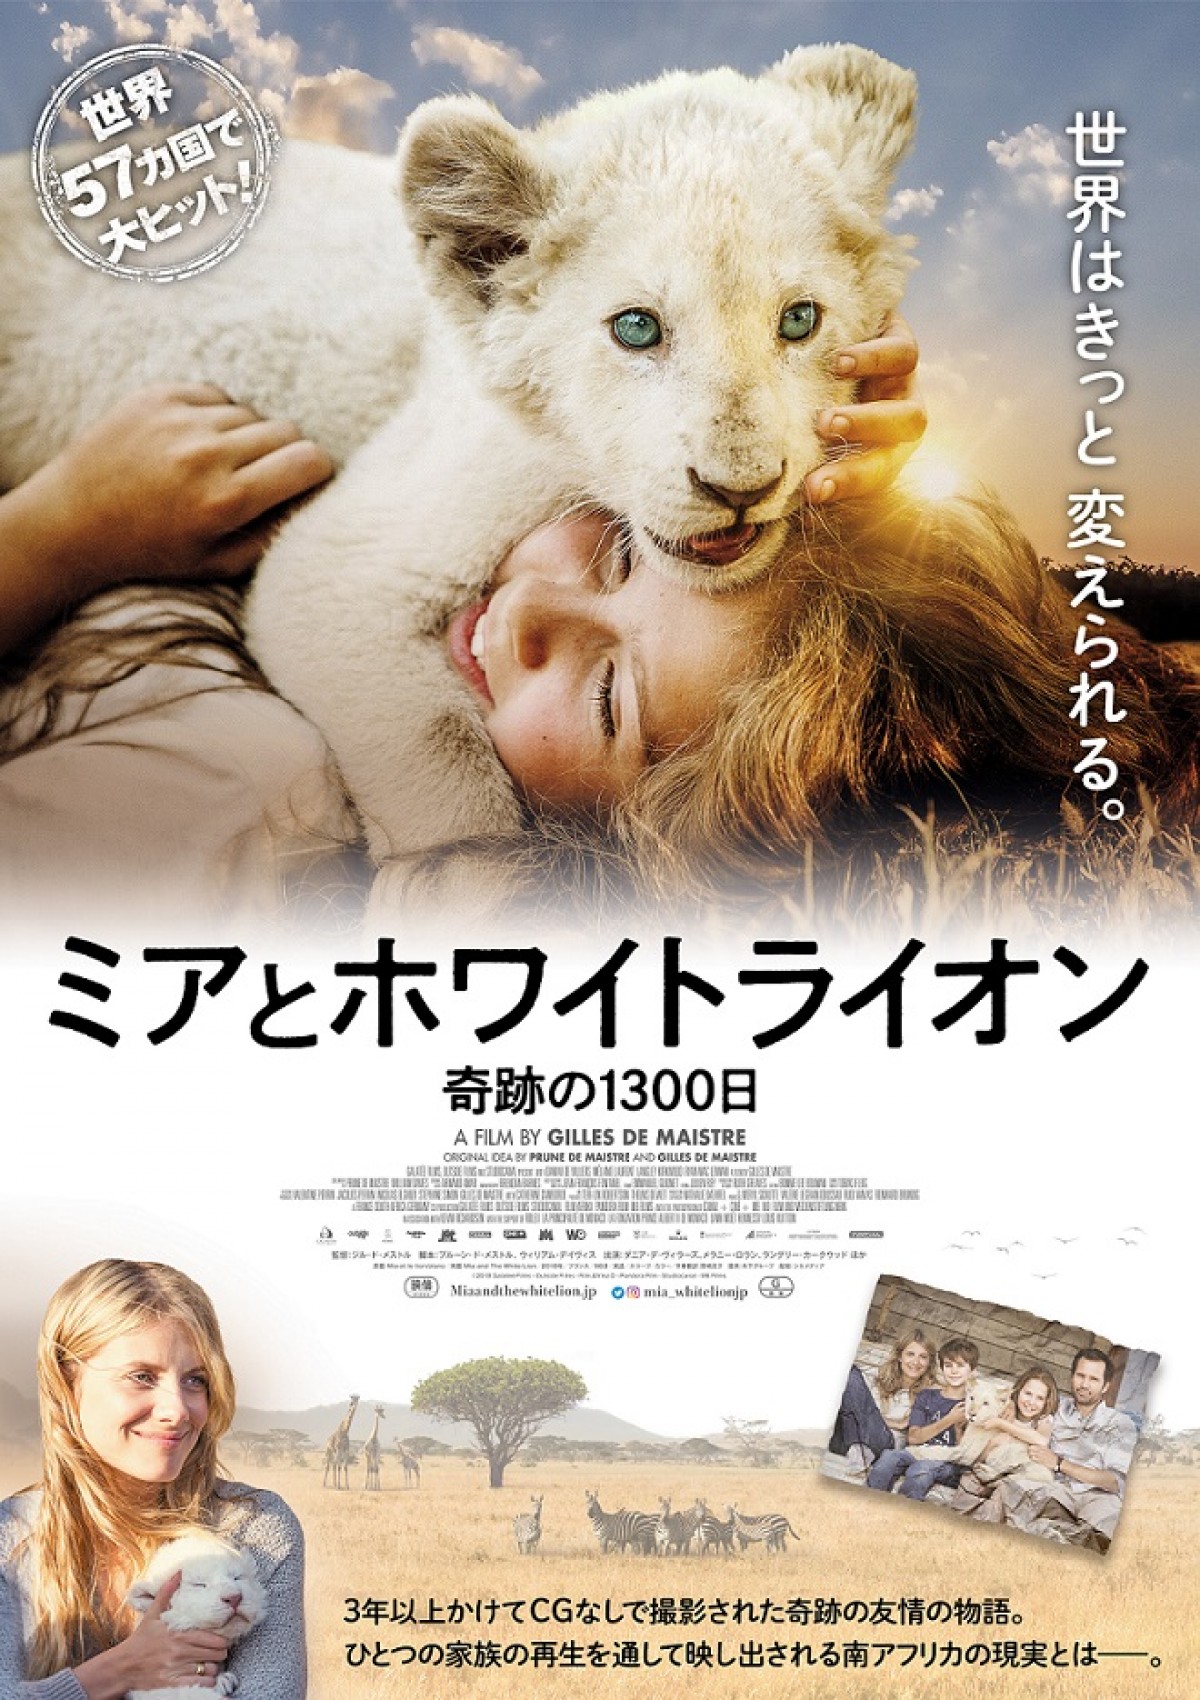 モフモフの赤ちゃんライオンがかわいすぎる！『ミアとホワイトライオン』特別映像